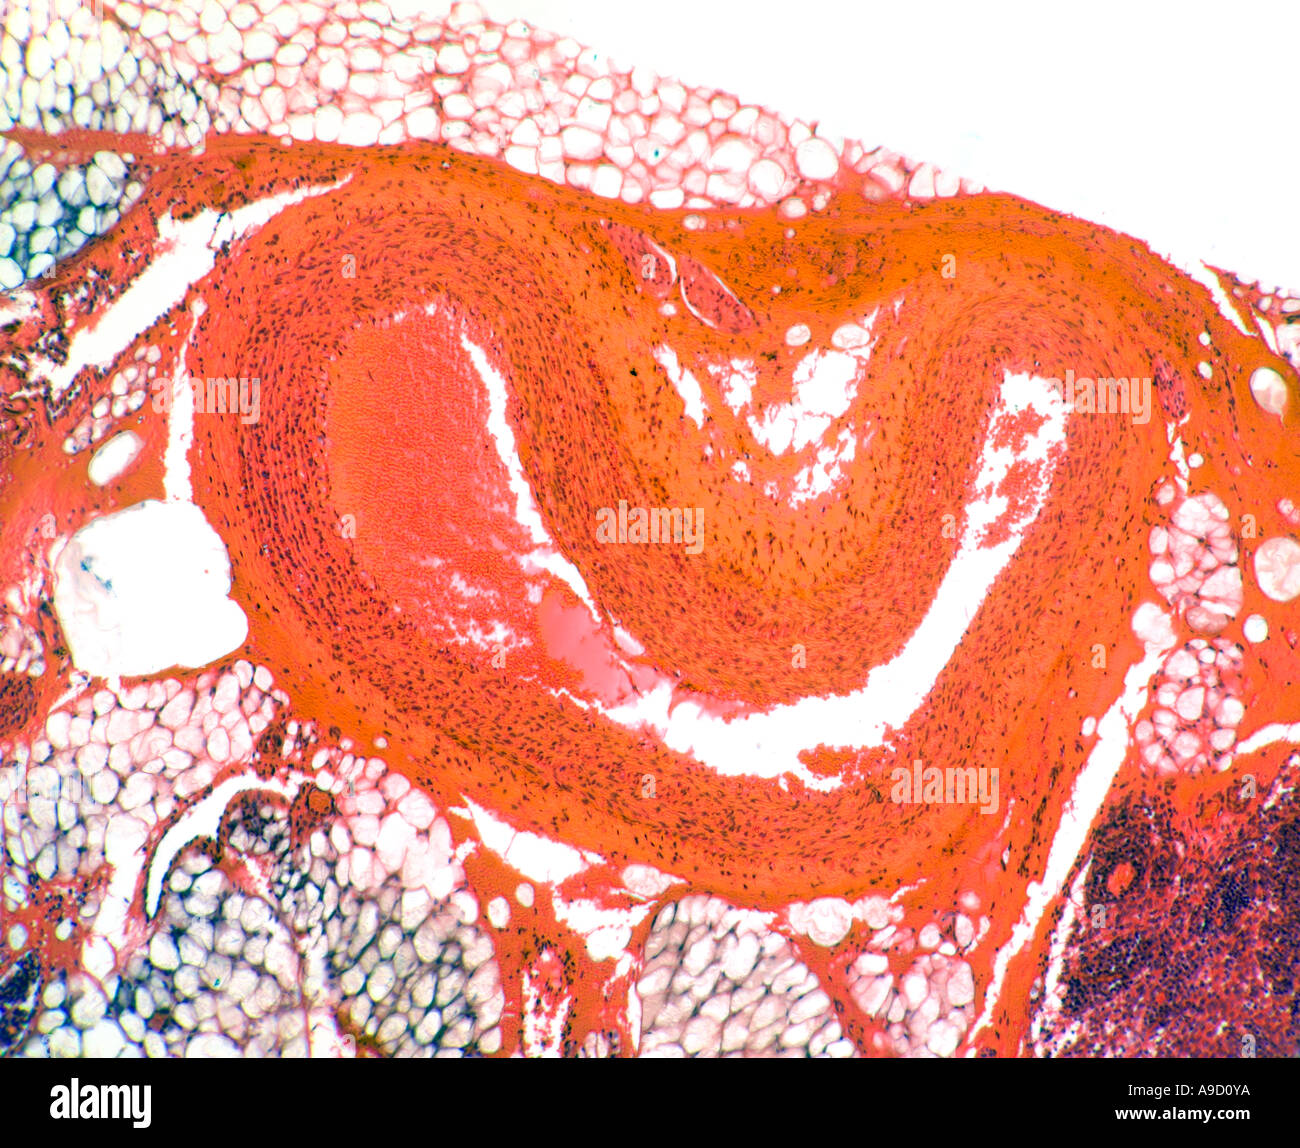 Arteria umana sezione fotomicrografia, qui mostrato è crollato (assenza di sangue all'interno) Foto Stock